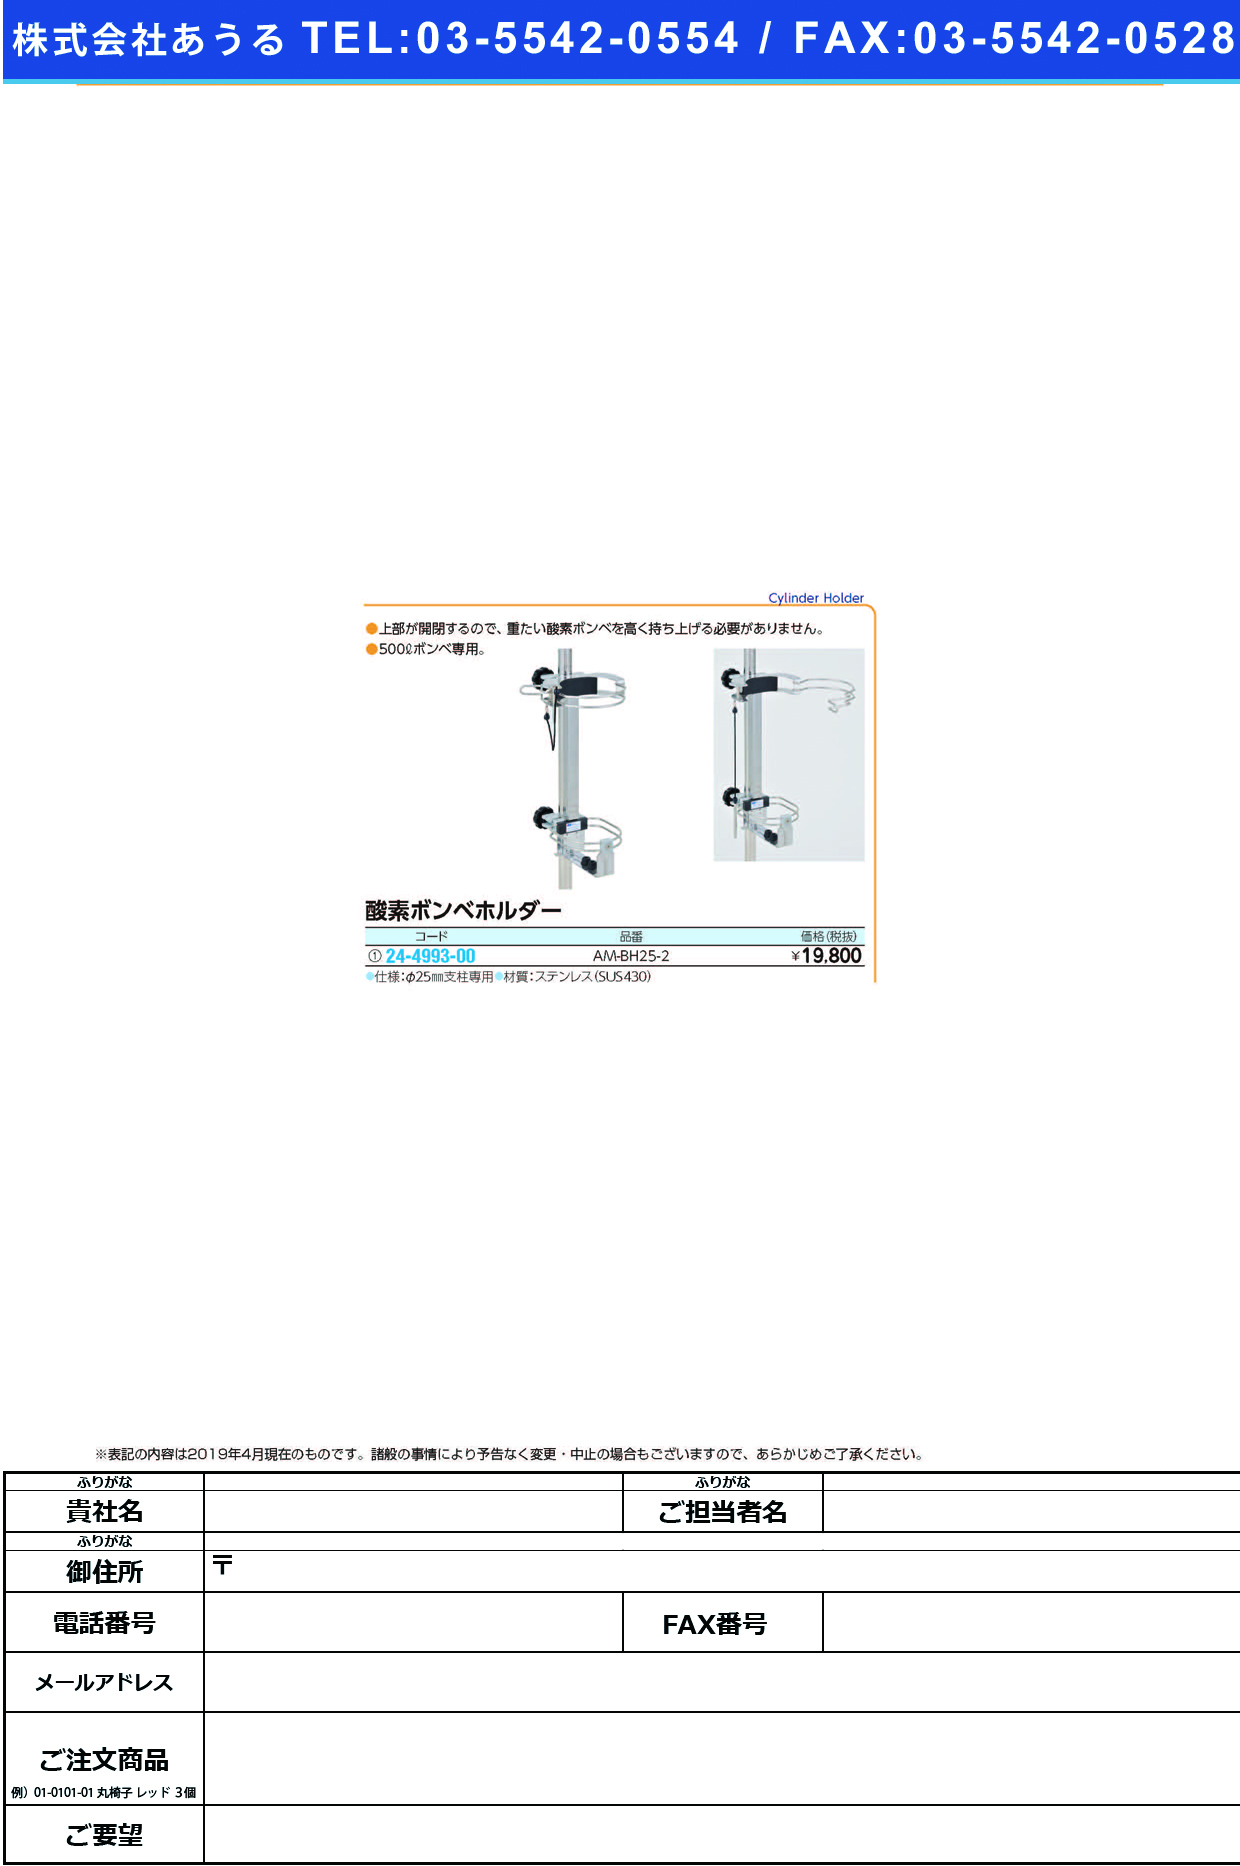 (24-4993-00)酸素ボンベホルダー AM-BH25-2 ｻﾝｿﾎﾞﾝﾍﾞﾎﾙﾀﾞｰ【1個単位】【2019年カタログ商品】